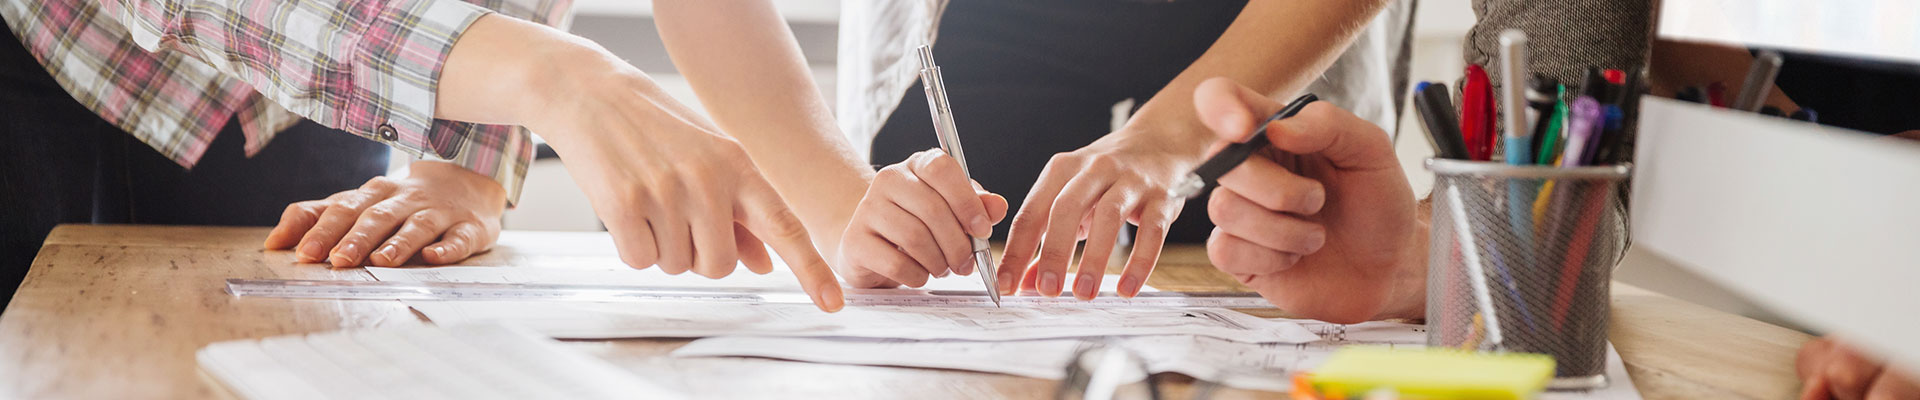 Les mains de trois personnes montrent un ou écrivent sur un papier sur une table.